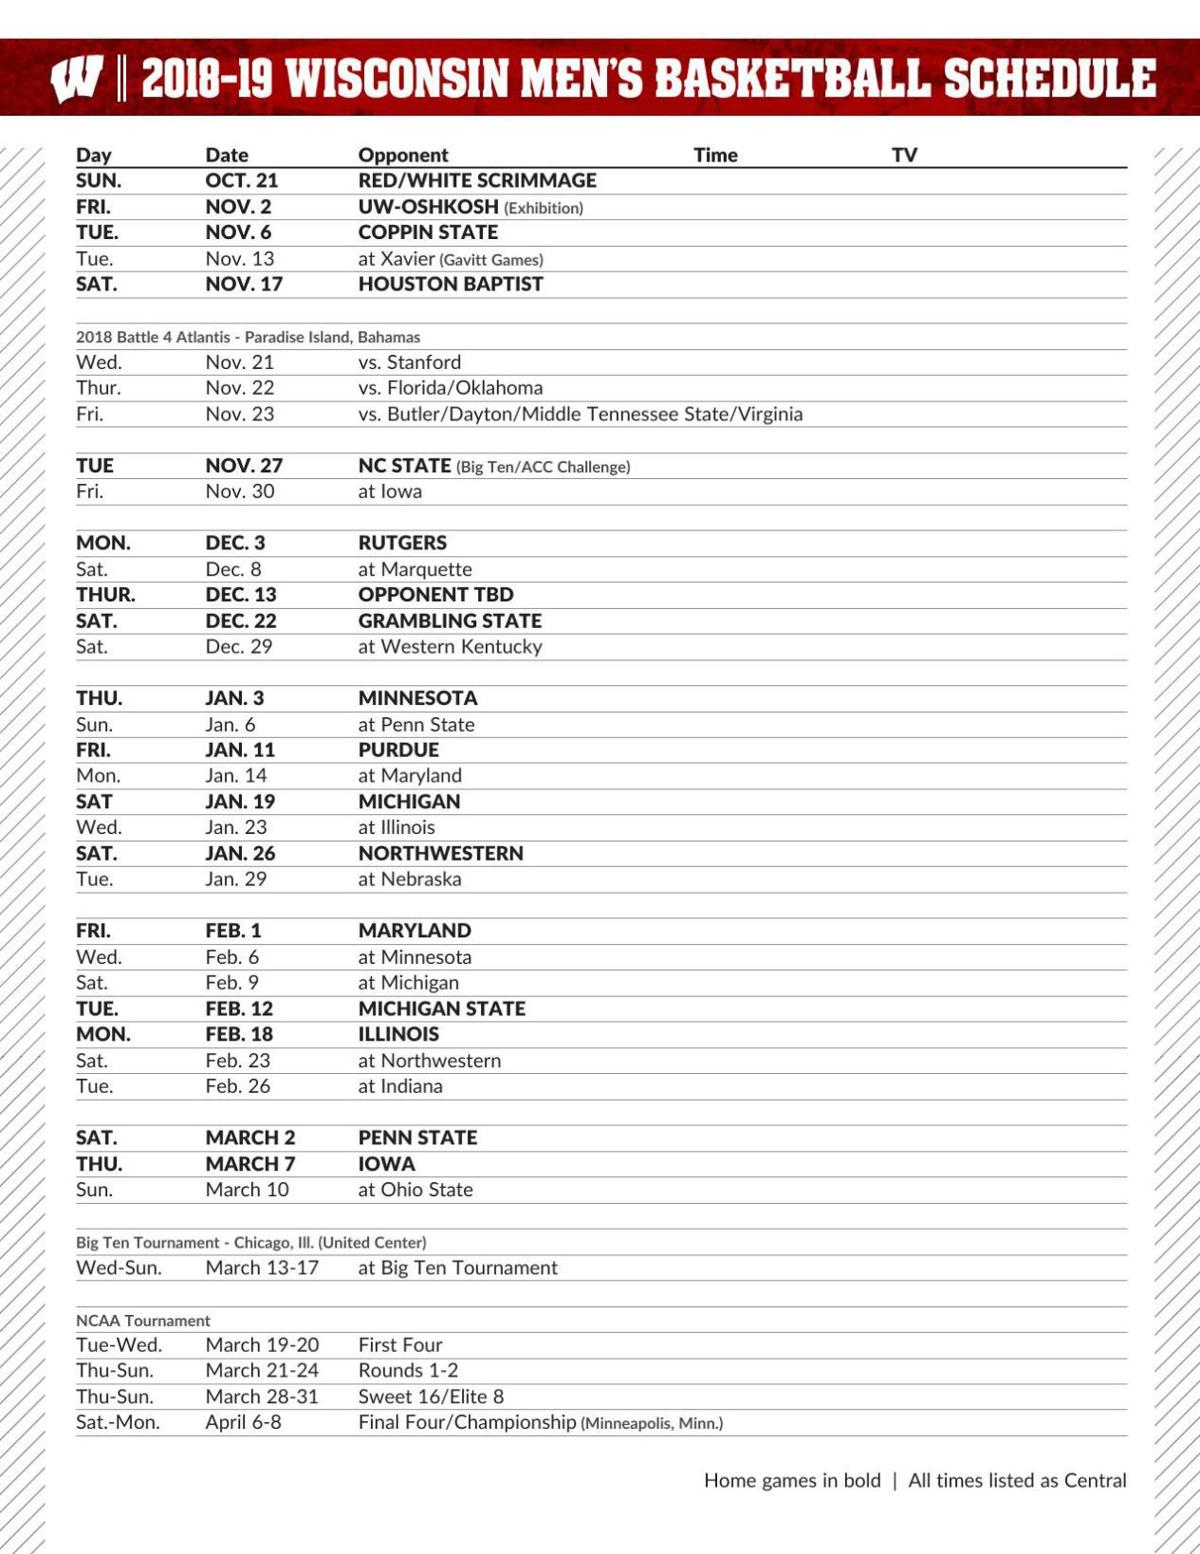 Badgers men's basketball schedule set with Big Ten opener at Iowa Nov